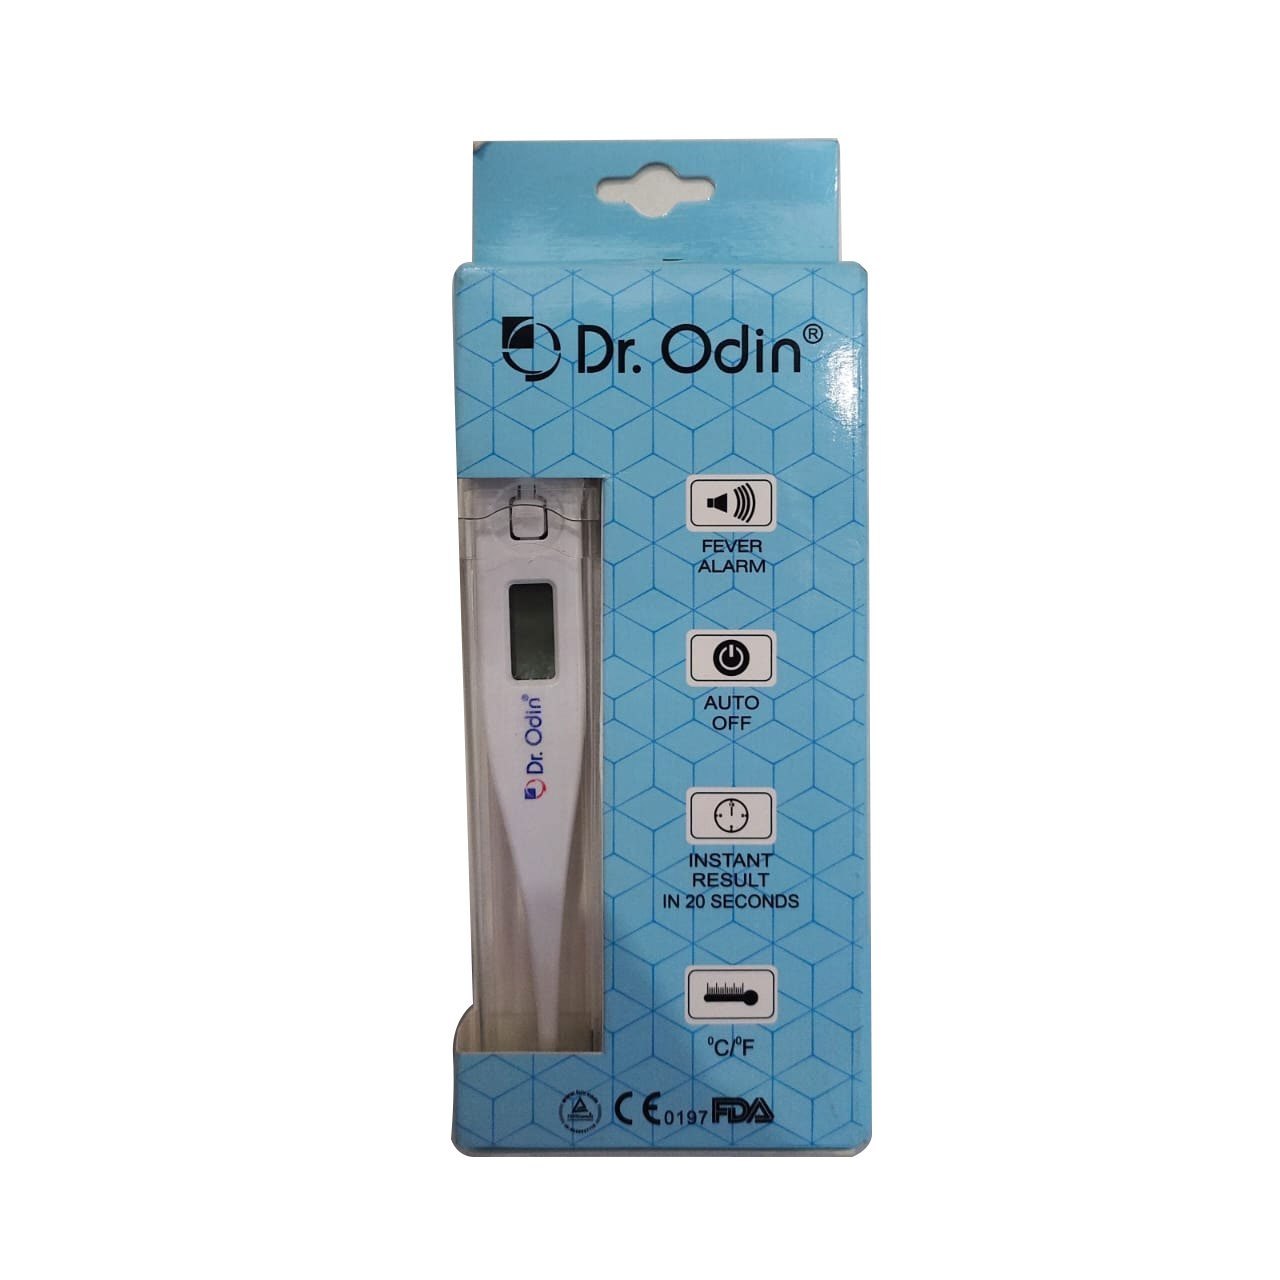 Dr. Odin Digital Thermometer DMT101